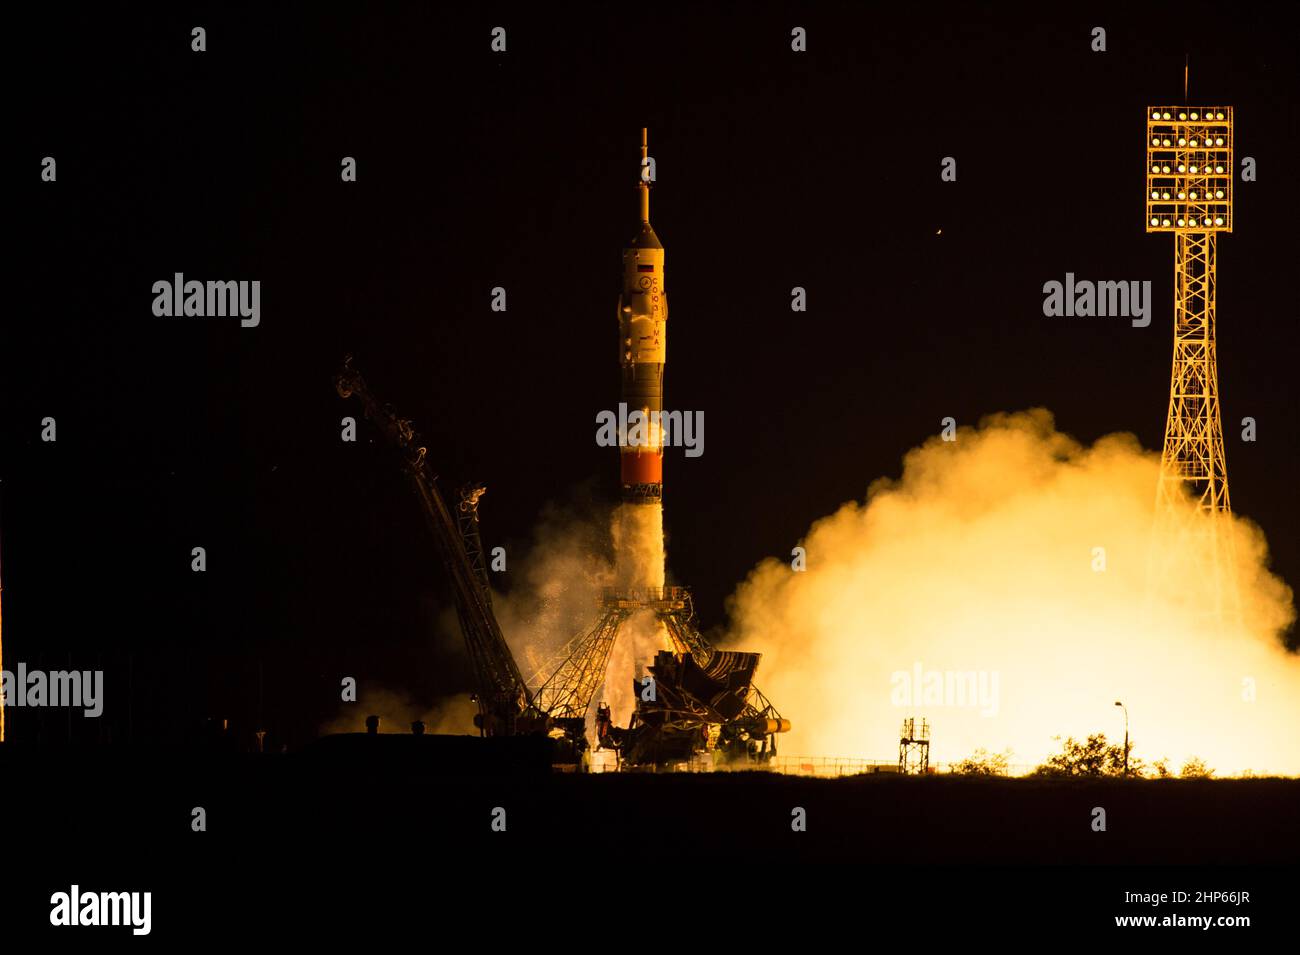 Il razzo Soyuz TMA-17M viene lanciato dal Cosmodrome Baikonur in Kazakistan giovedì 23 luglio 2015 con spedizione 44 il comandante Soyuz Oleg Kononenko dell'Agenzia spaziale Federale Russa (Roscosmos), ingegnere di volo Kjell Lindgren della NASA, E l'ingegnere di volo Kimiya Yui dell'agenzia di esplorazione aerospaziale giapponese (JAXA) in orbita per iniziare la loro missione di cinque mesi sulla stazione spaziale internazionale. Foto Stock